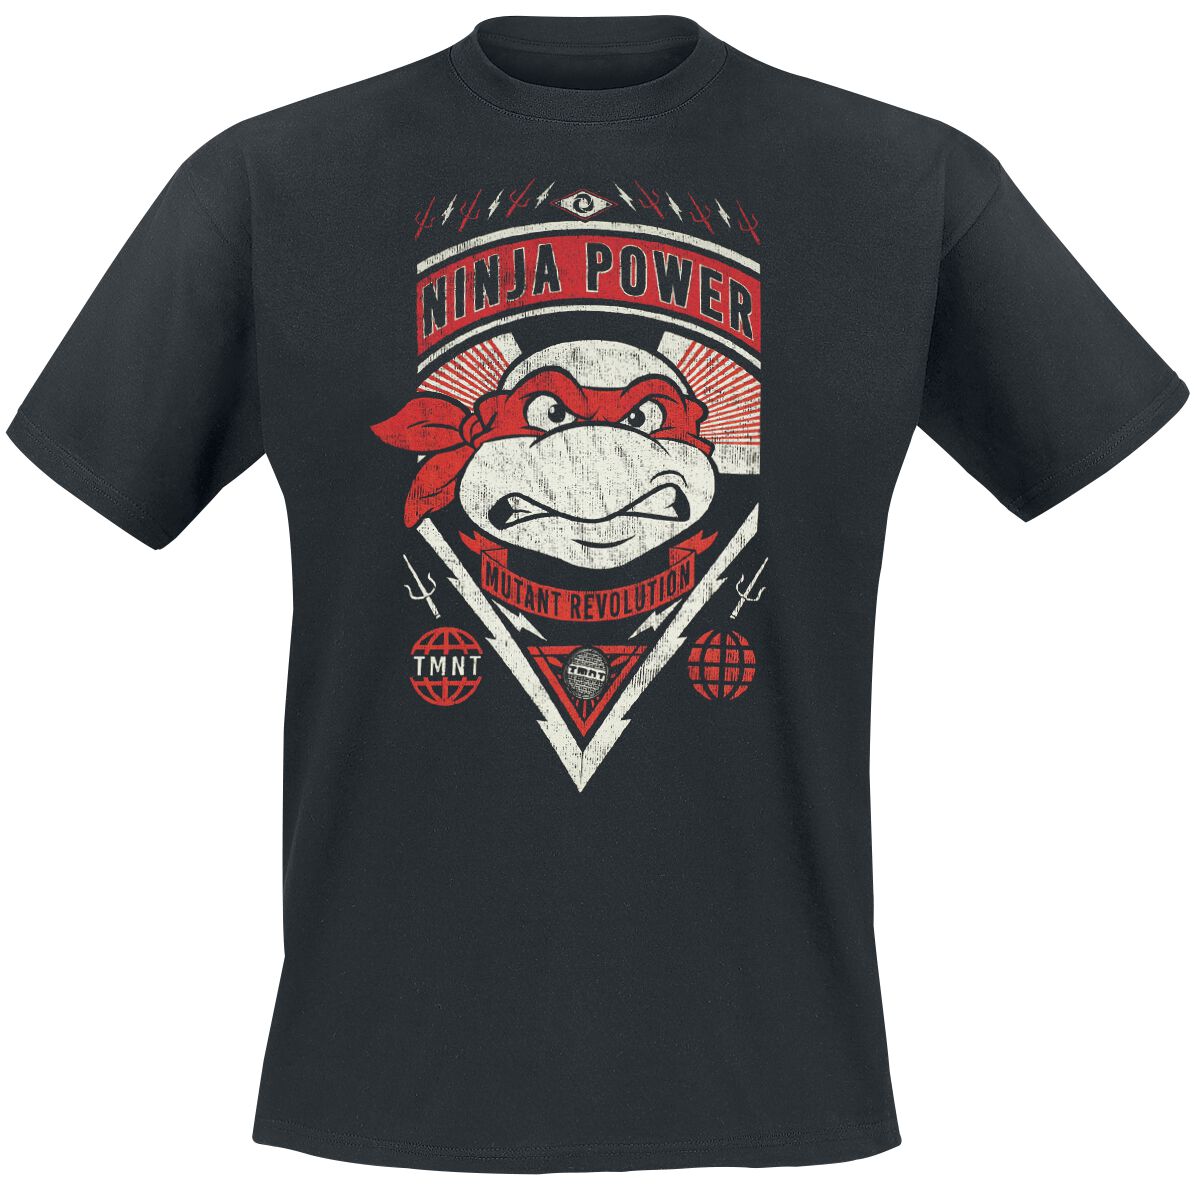 Teenage Mutant Ninja Turtles T-Shirt - Raphael - Ninja Power - S bis XXL - für Männer - Größe S - schwarz  - Lizenzierter Fanartikel